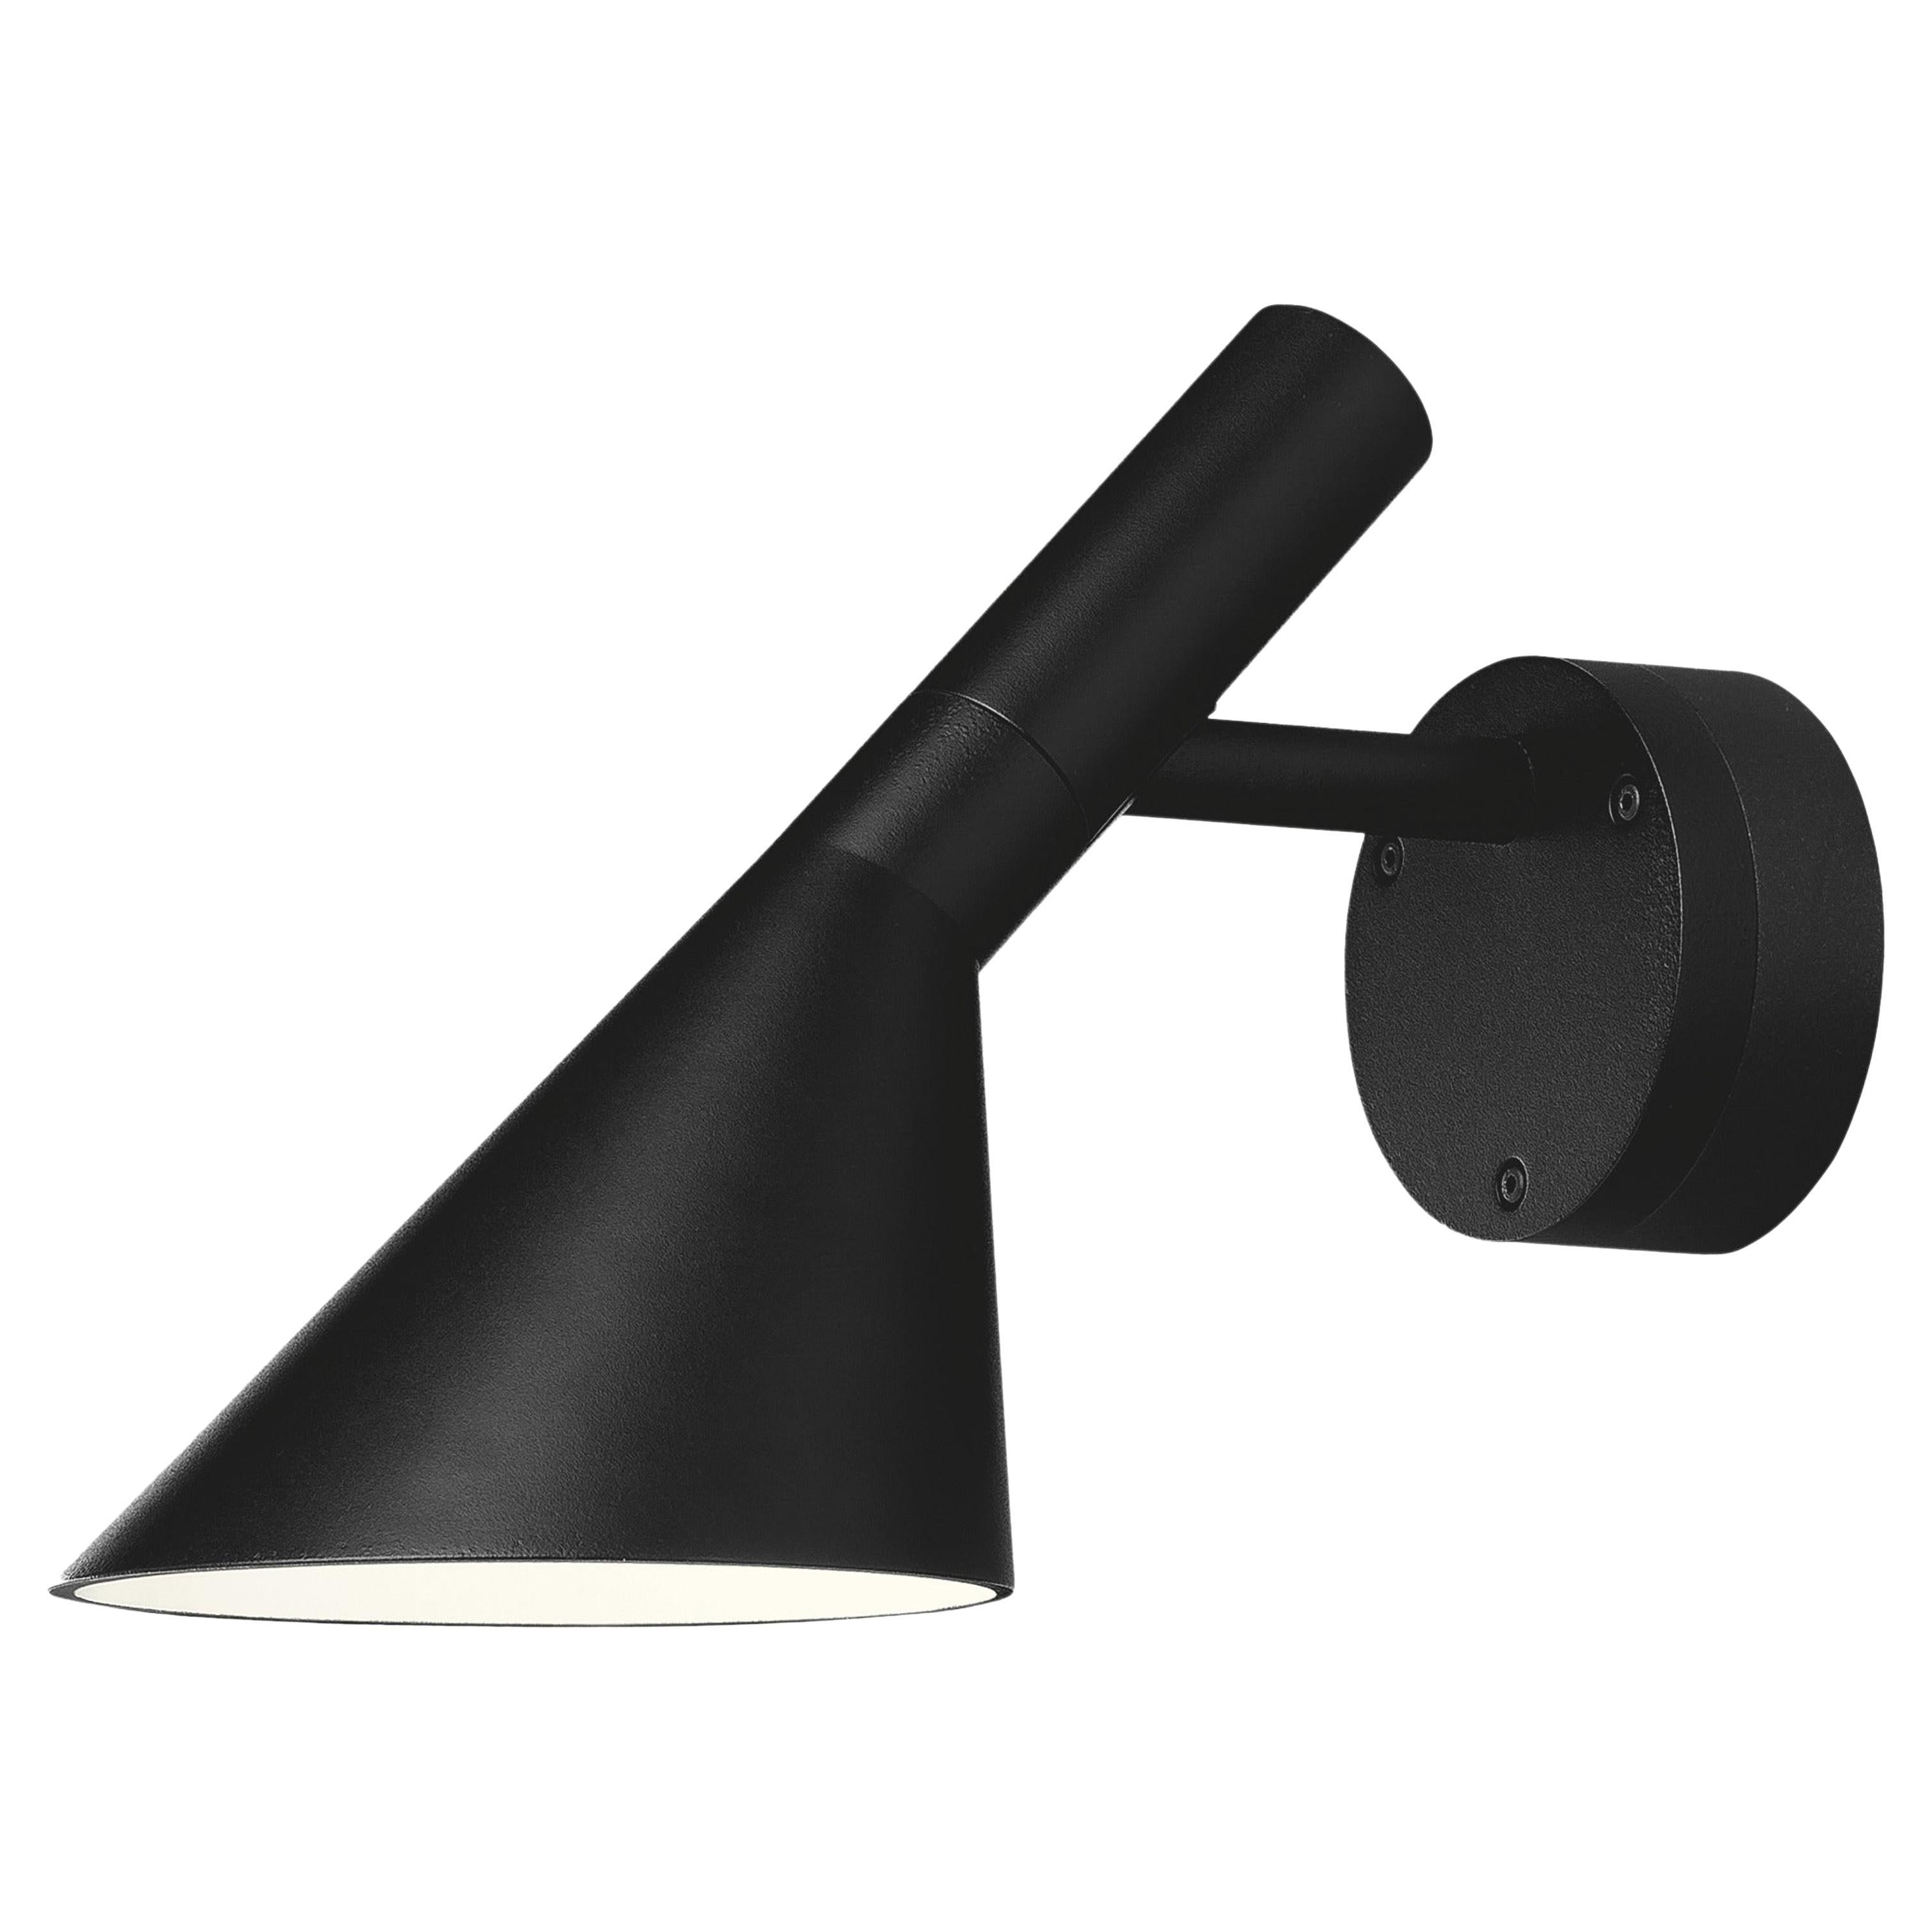 Louis Poulsen Outdoor AJ 50 Wall Lamp in Black by Arne Jacobsen